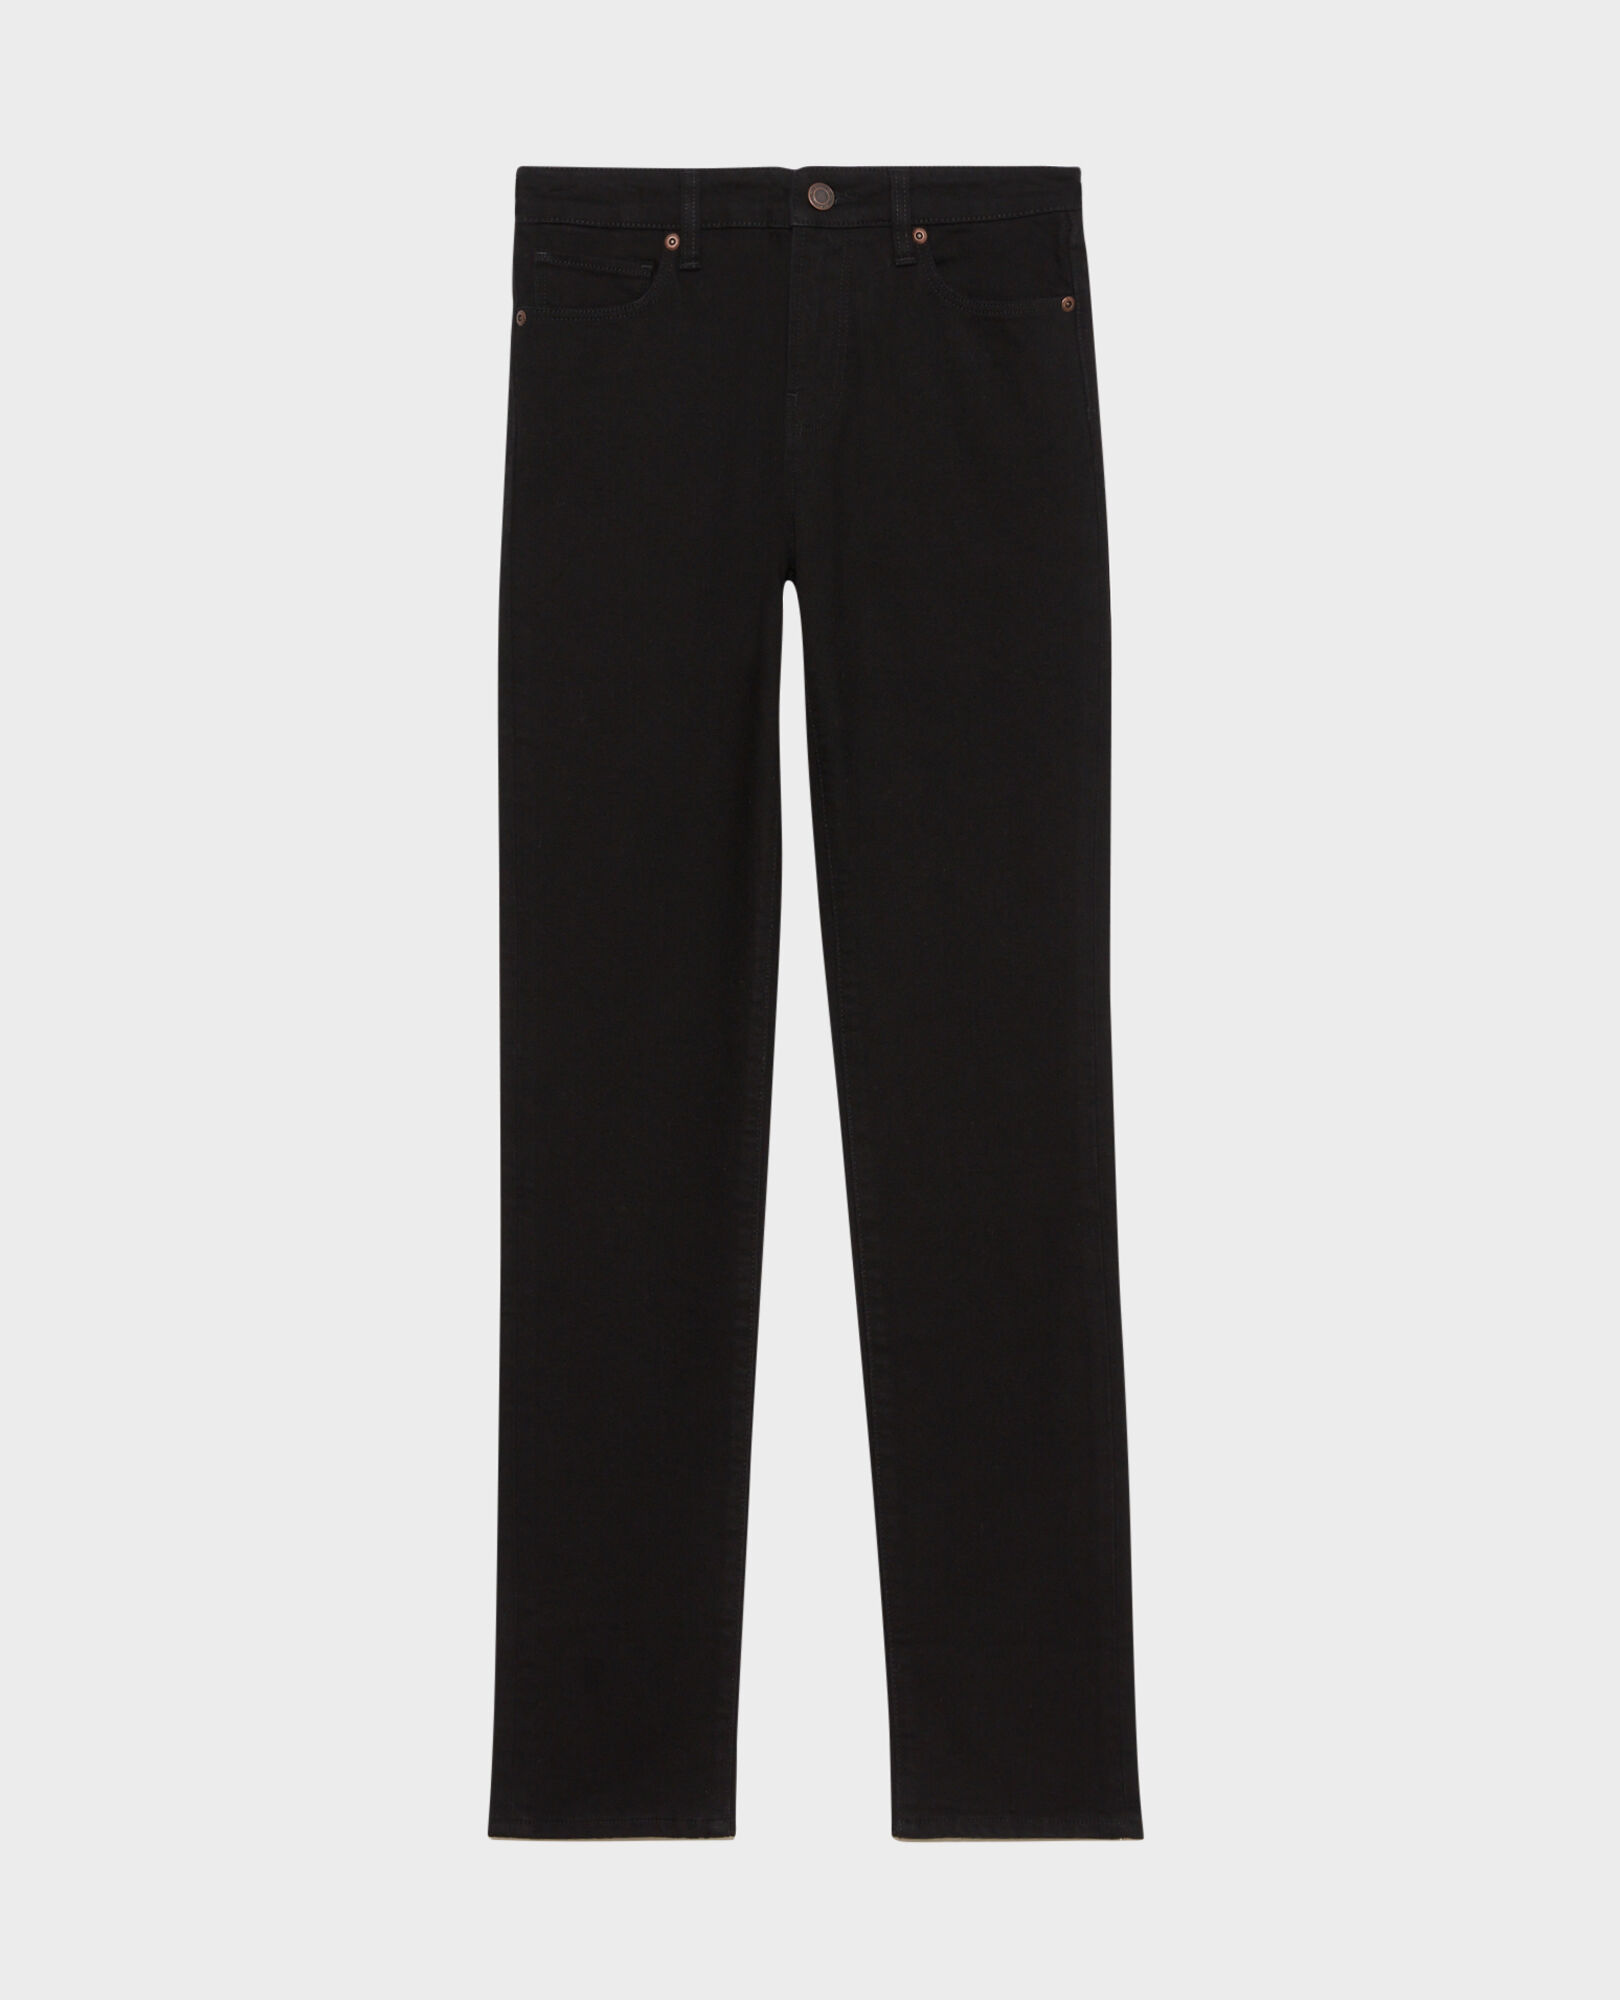 LILI - SLIM - Black 5 pocket jeans Noir denim Pandrac